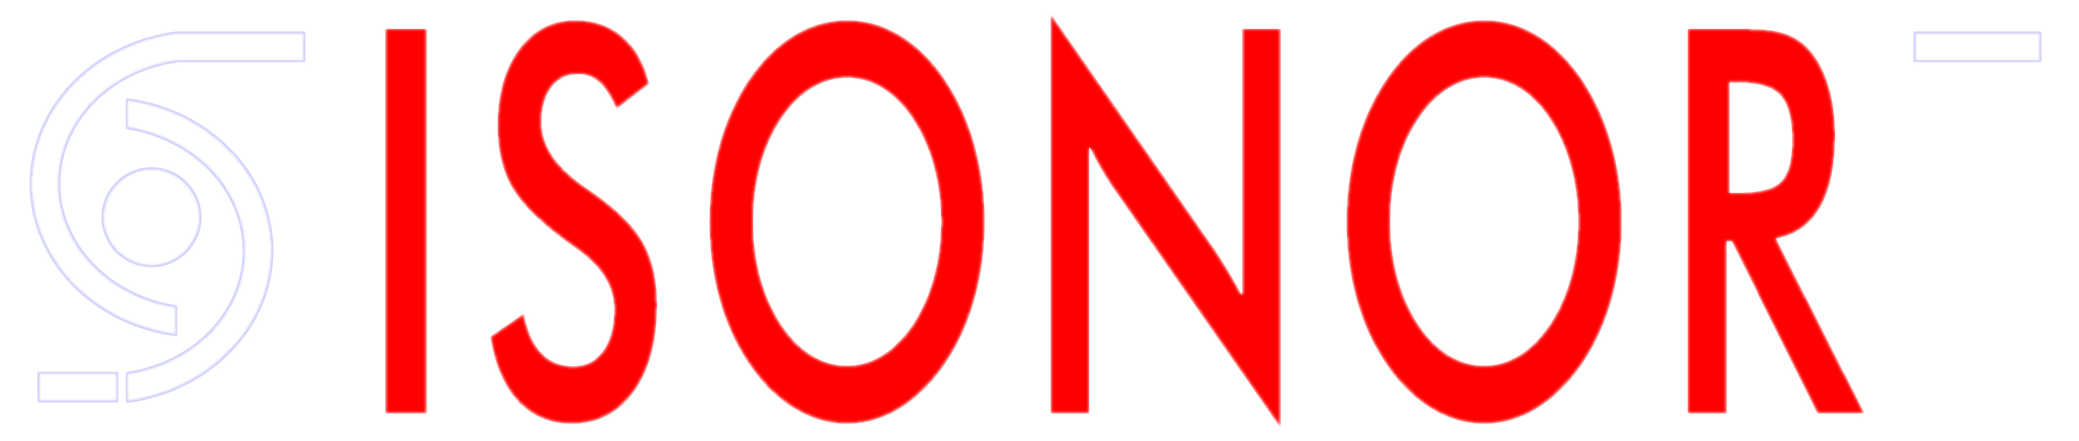 ISONOR logo